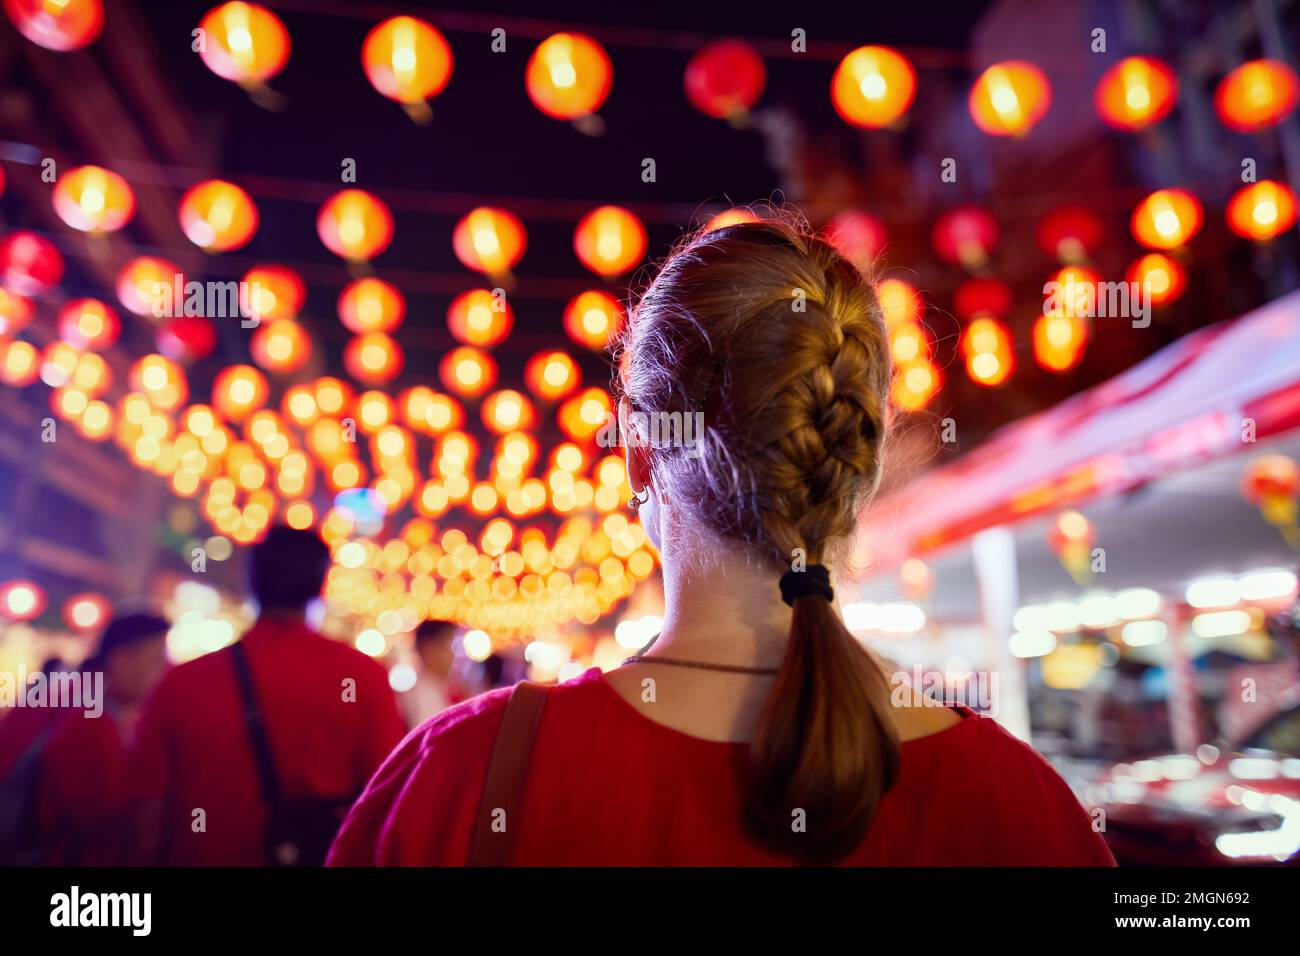 Femme touristique en chemise rouge regardant la décoration du marché de nuit avec des lanternes rouges pour le nouvel an chinois à Bangkok Chinatown en Thaïlande Banque D'Images